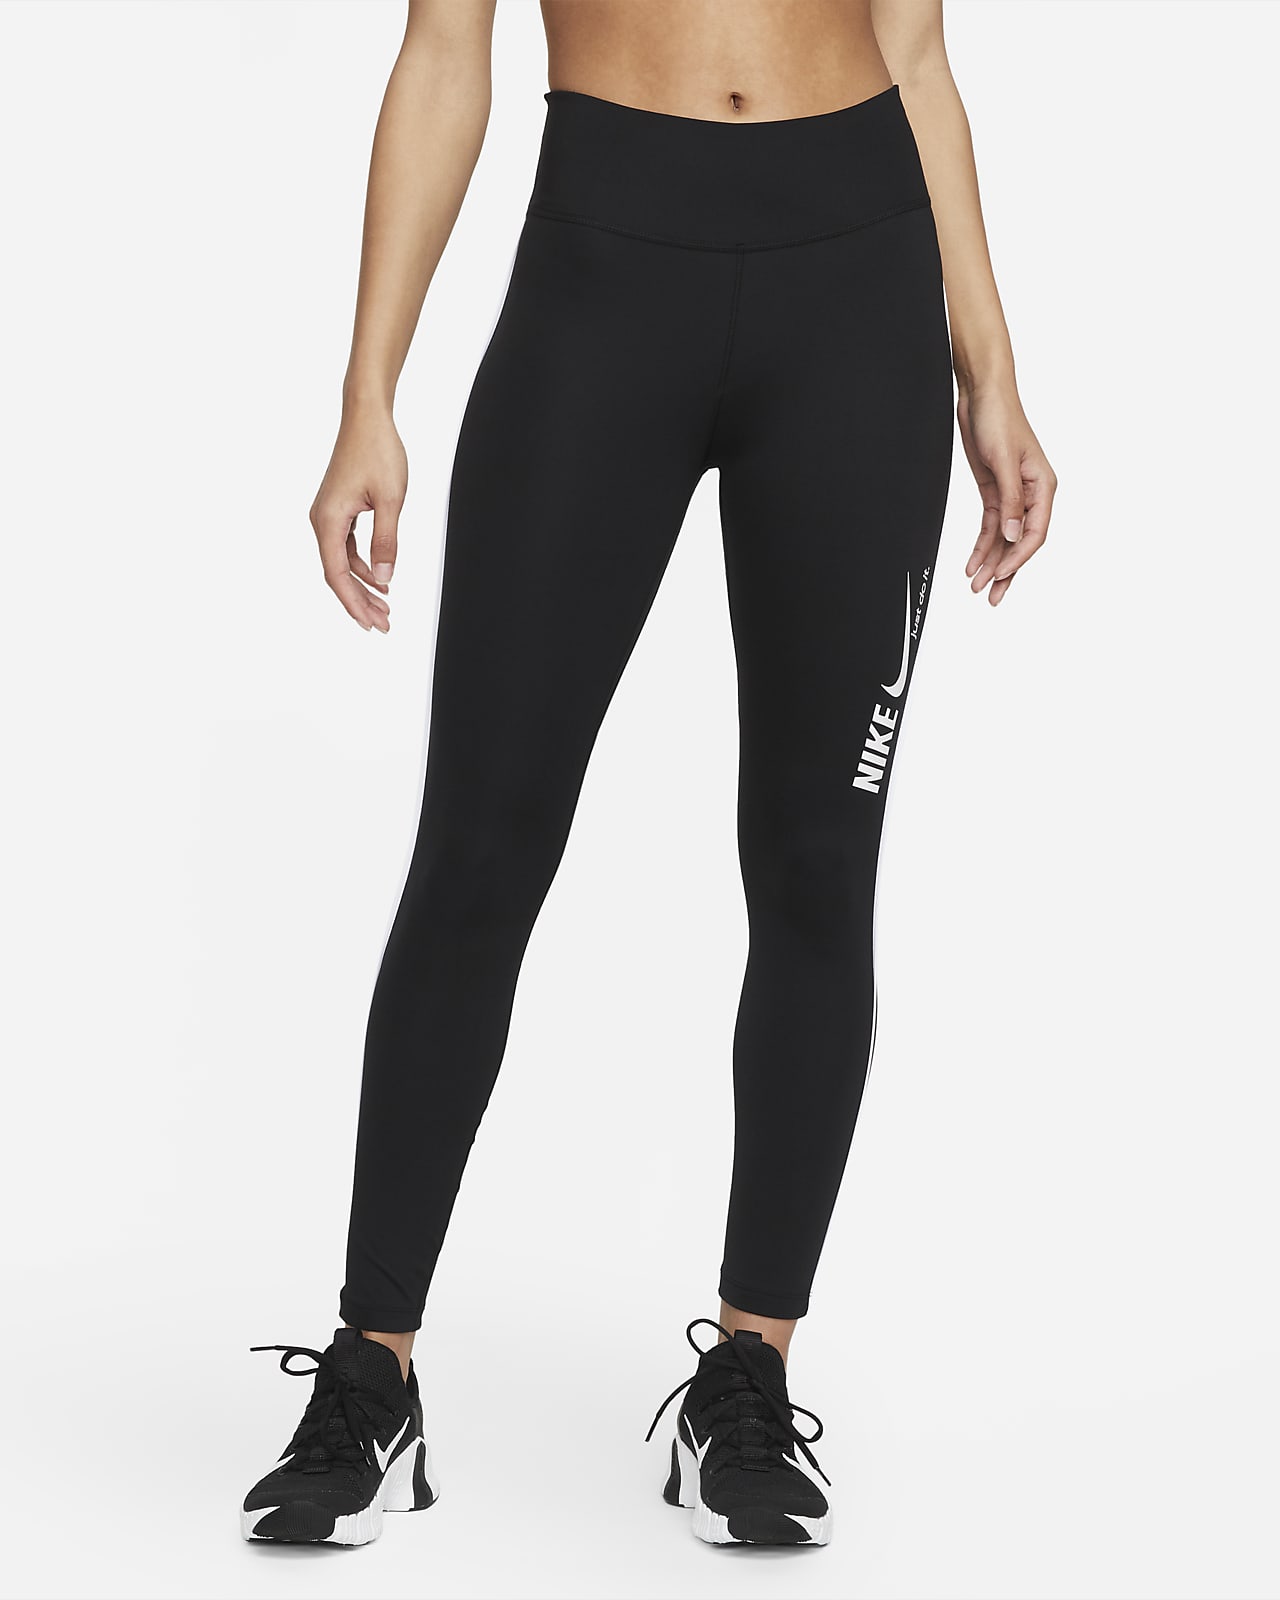 Legging 7/8 taille mi-haute à motif Nike One pour Femme